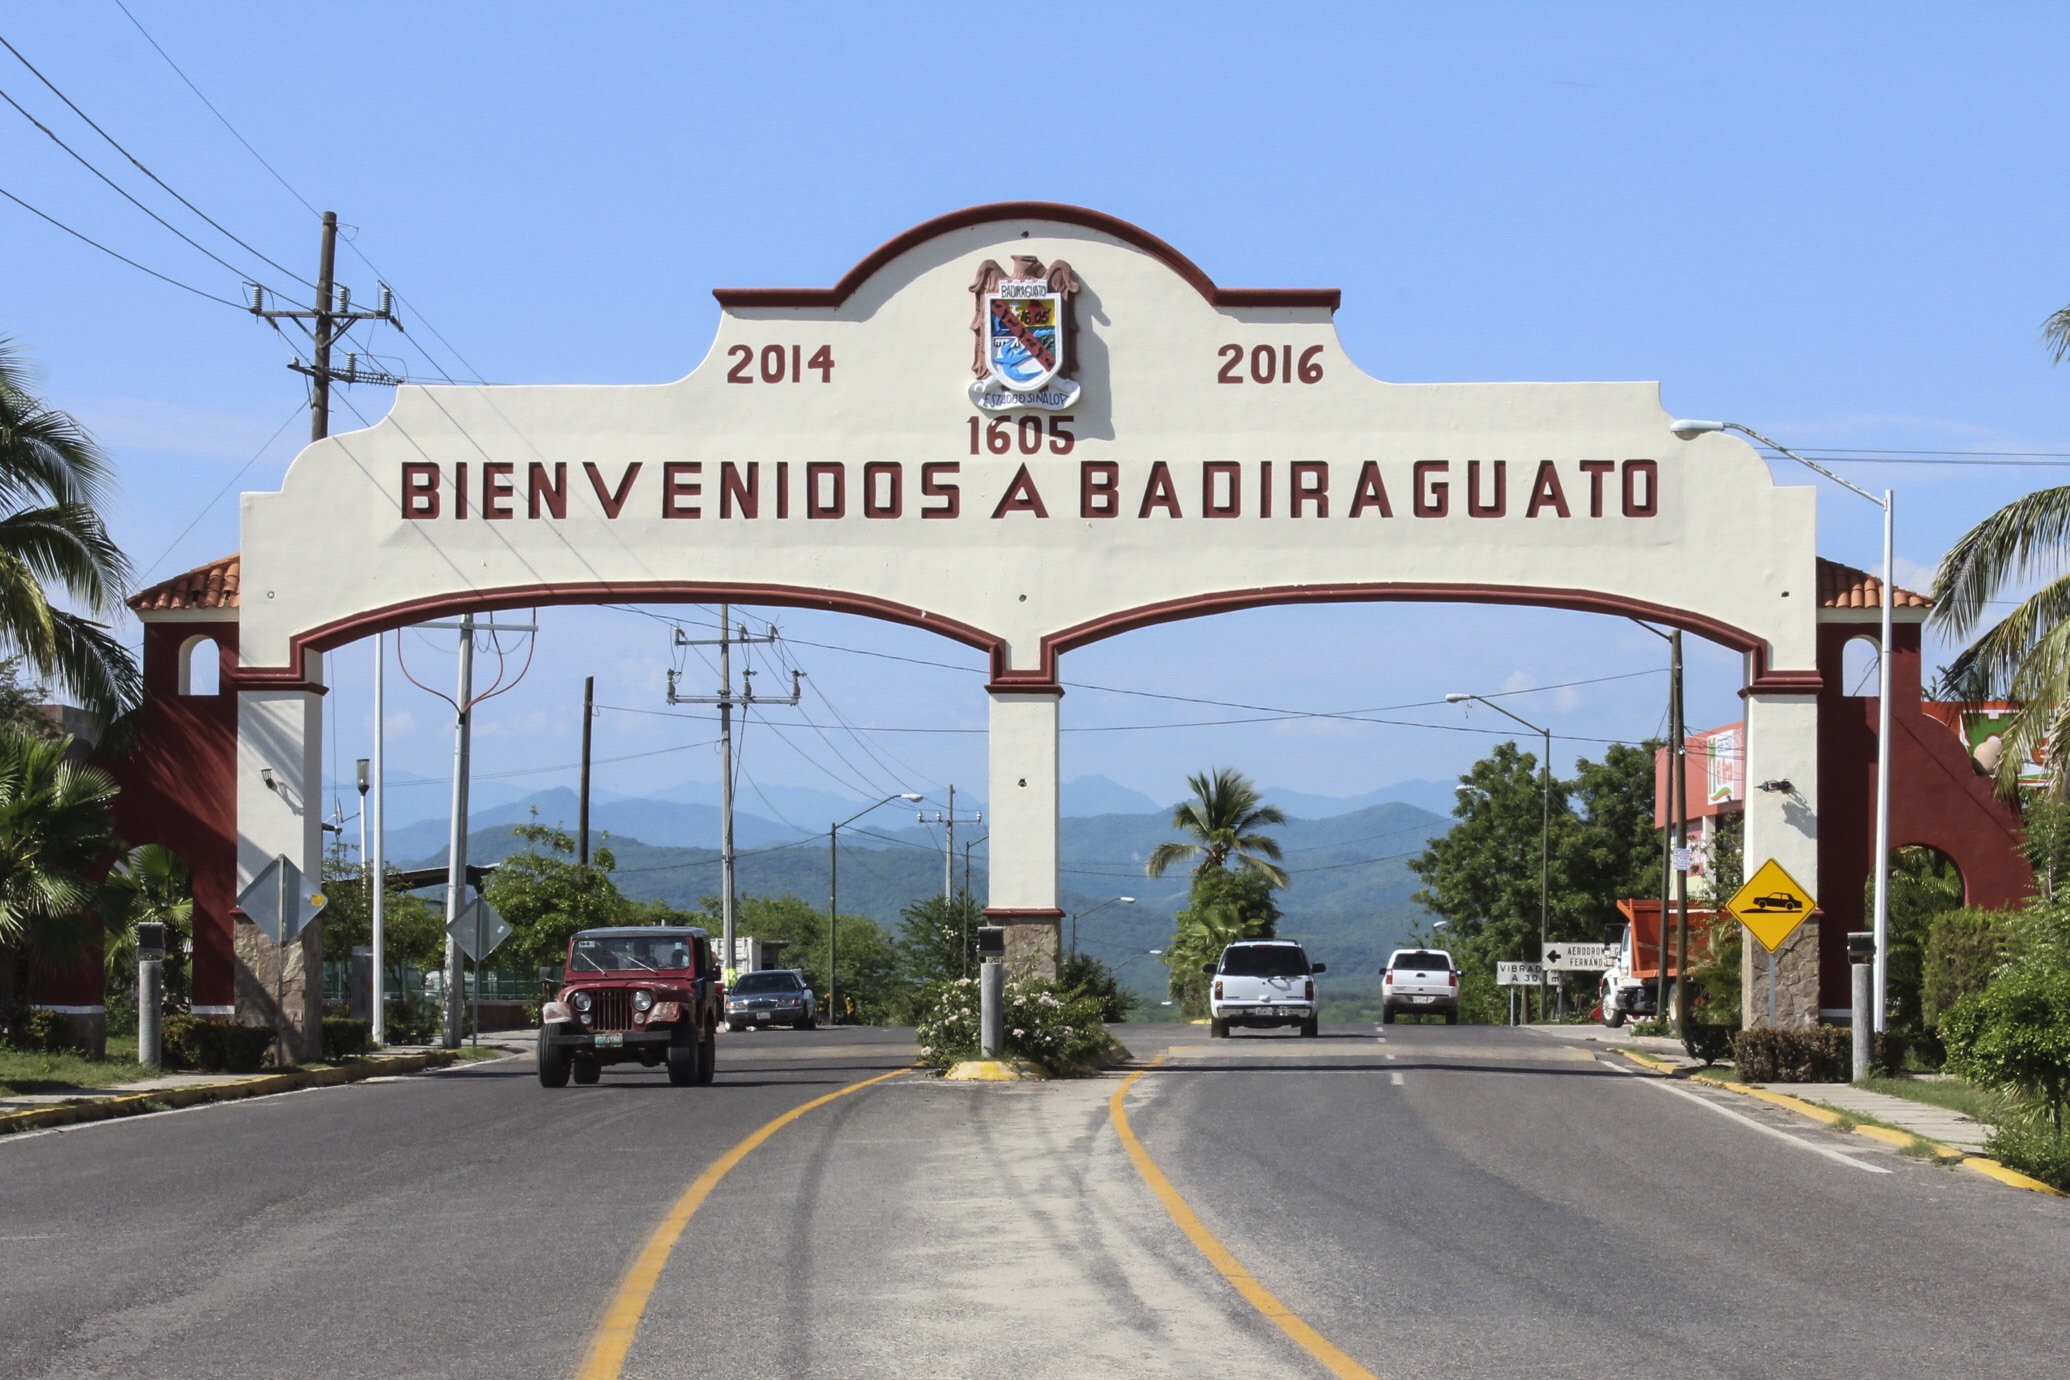 Badiraguato es conocido como la cuna de importantes líderes del narcotráfico. (Foto: Cuartoscuro)